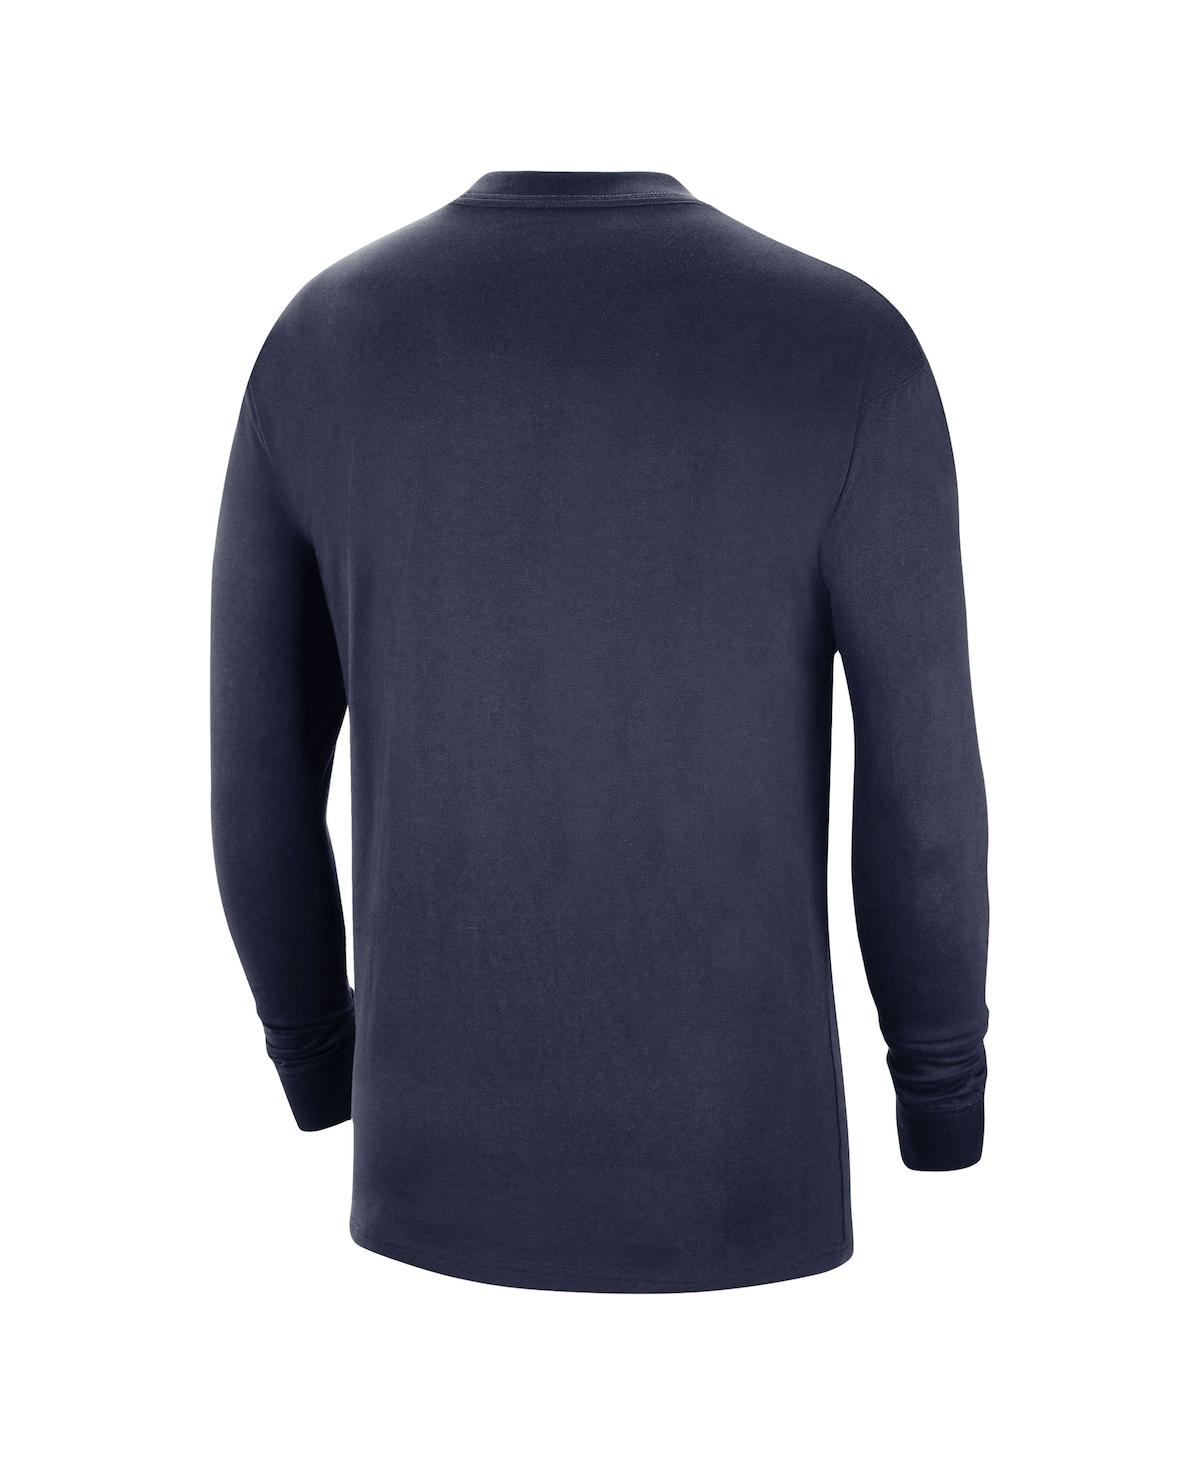 Shop Nike Men's  Navy West Virginia Mountaineers Seasonal Max90 2-hit Long Sleeve T-shirt